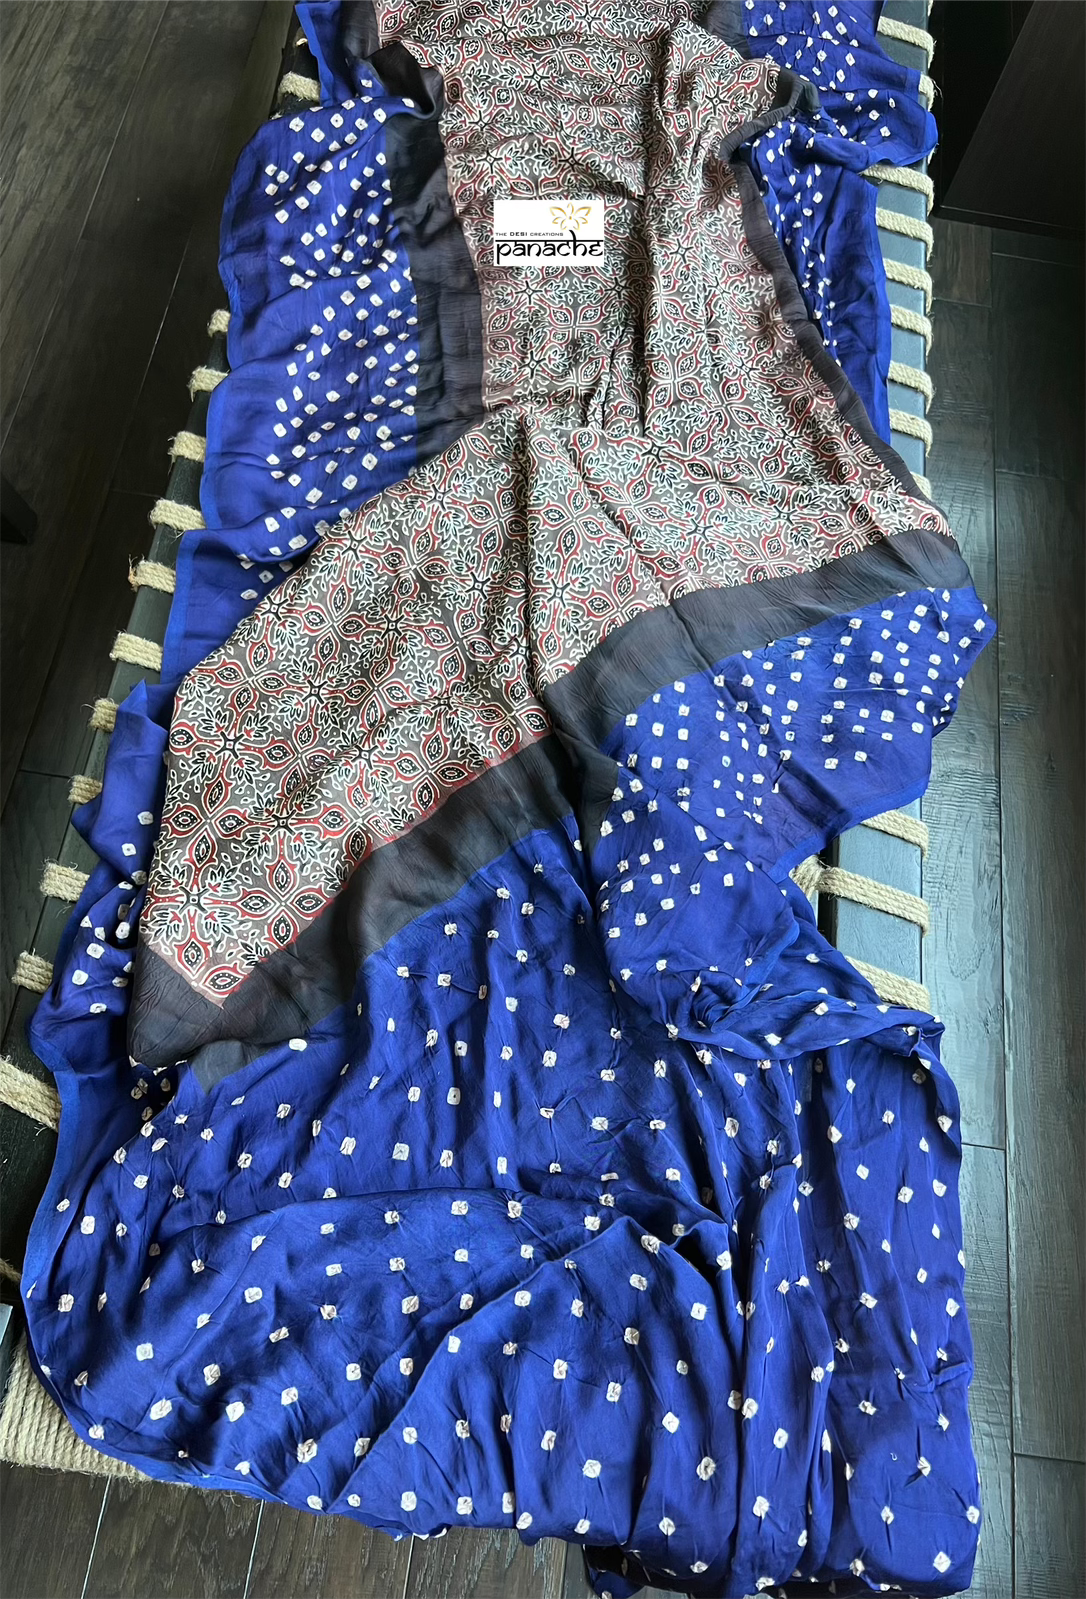 Modal Silk Ajrakh Bandhej - Mocha Brown Blue